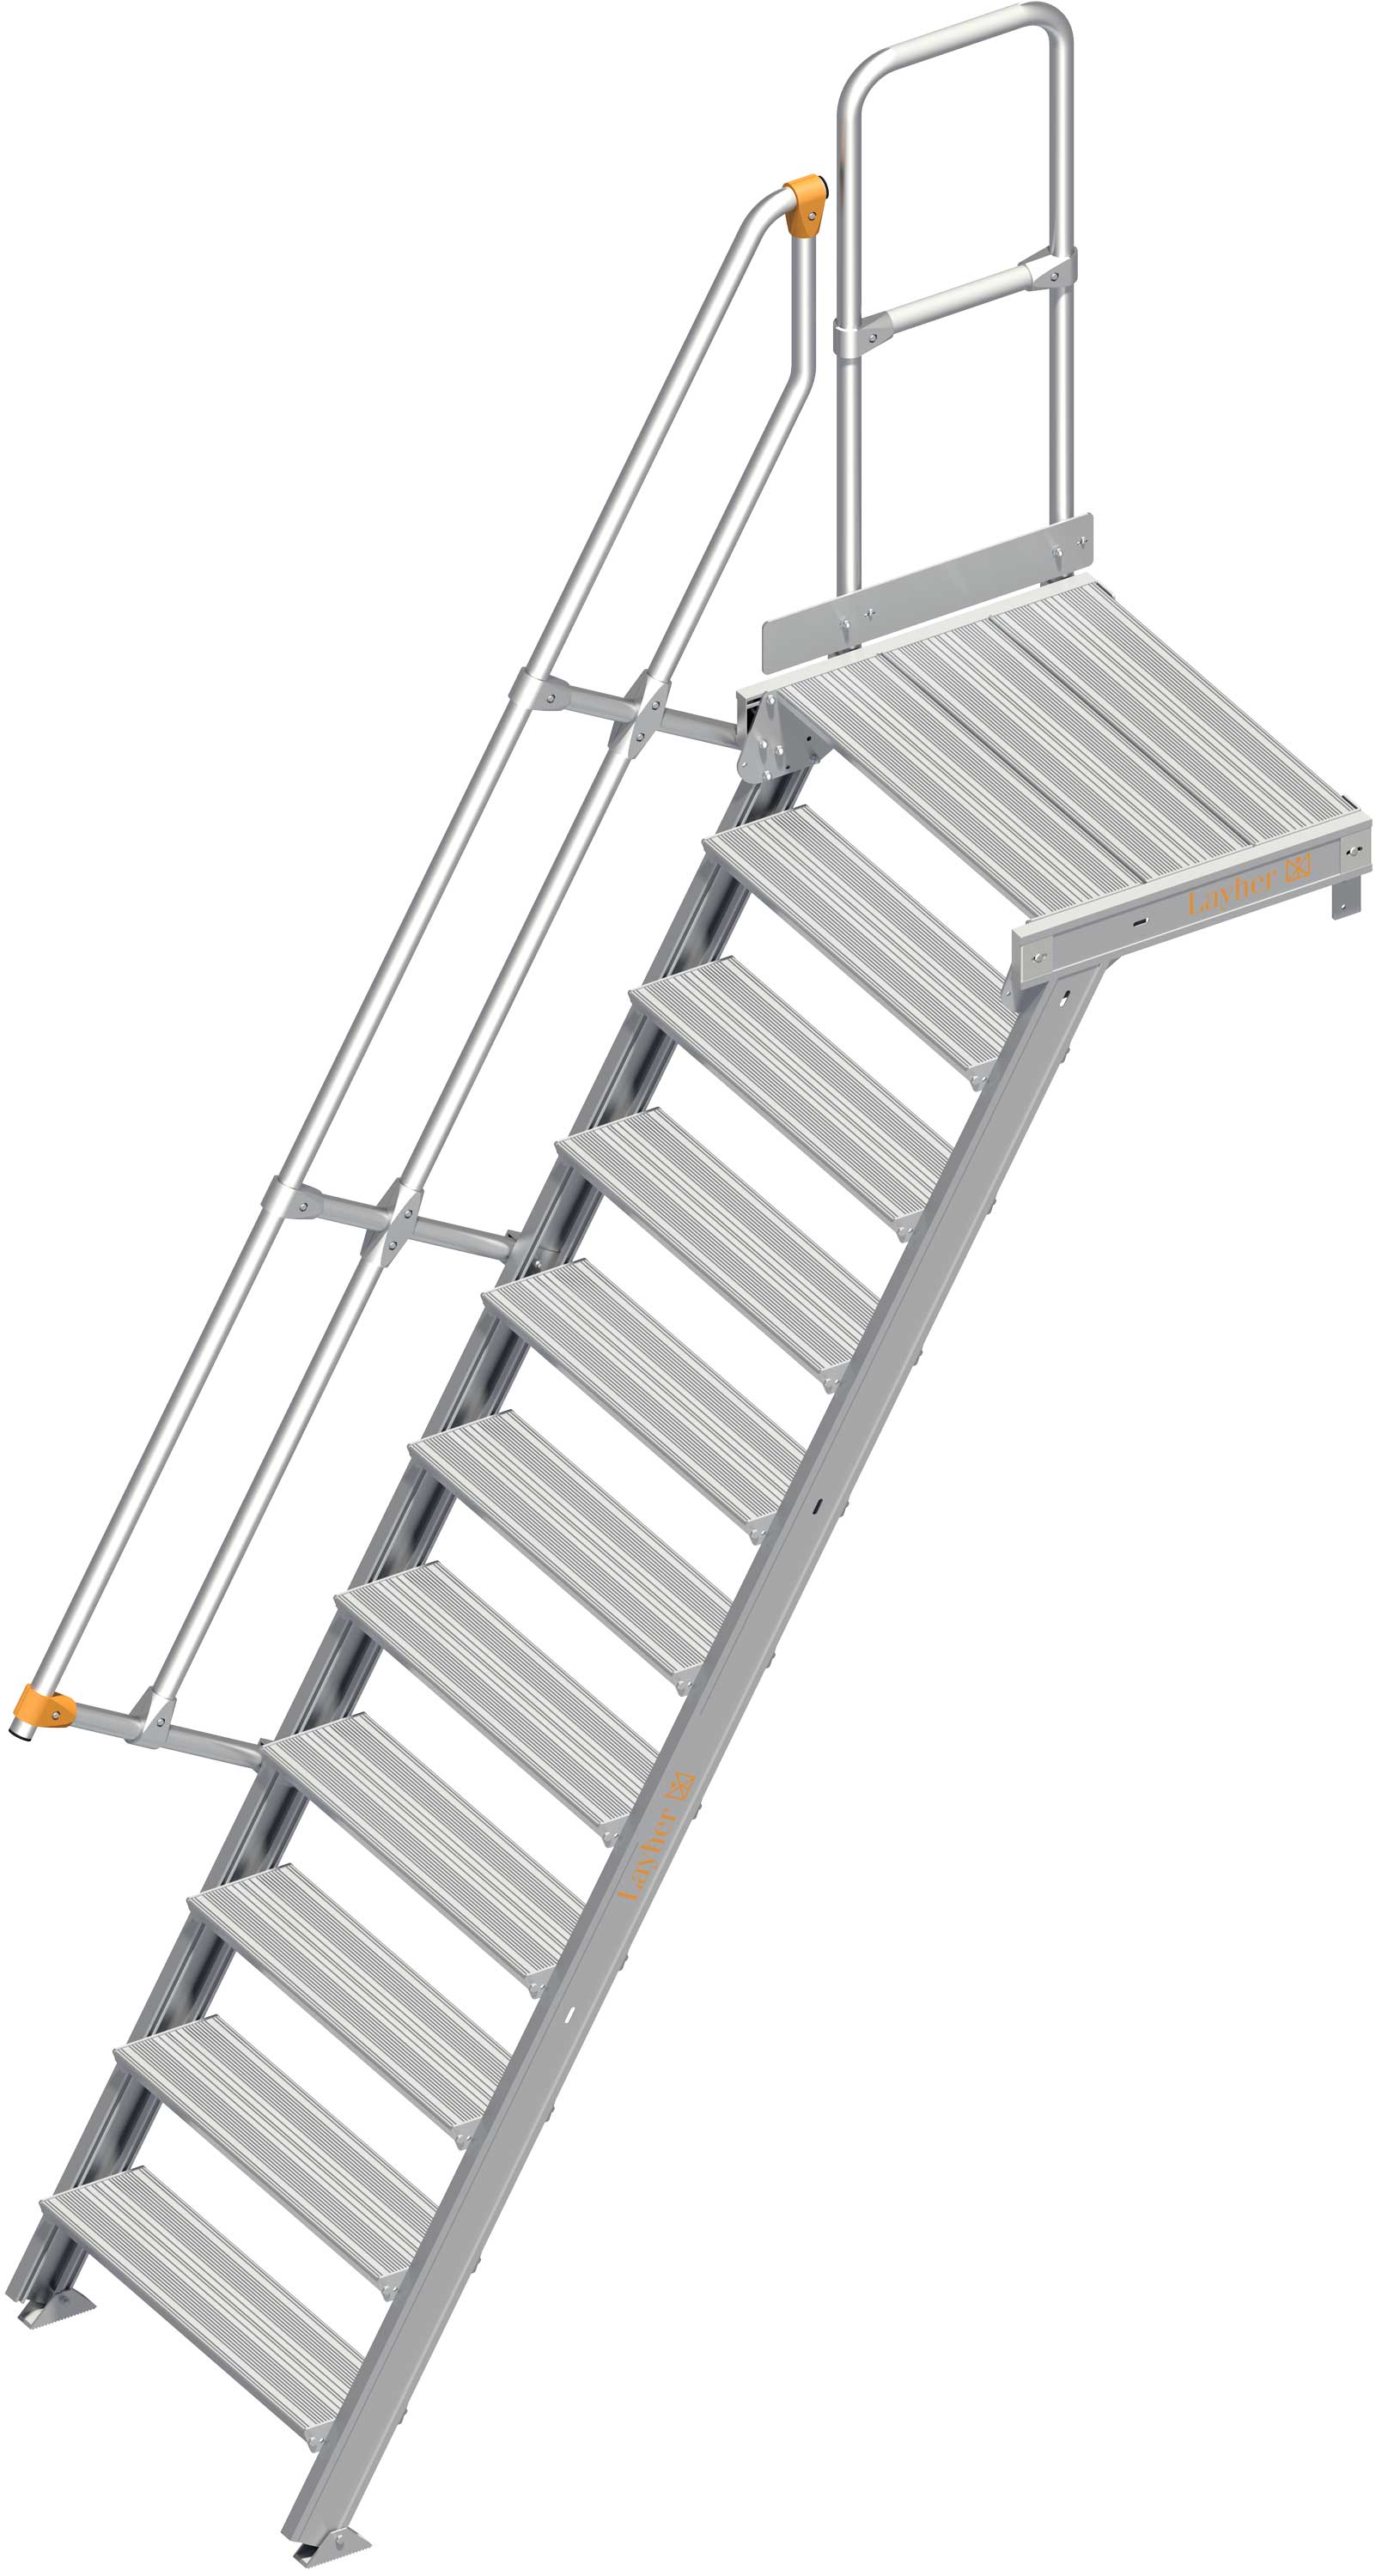 Layher Plattformtreppe 60° 11 Stufen - 800 mm breit